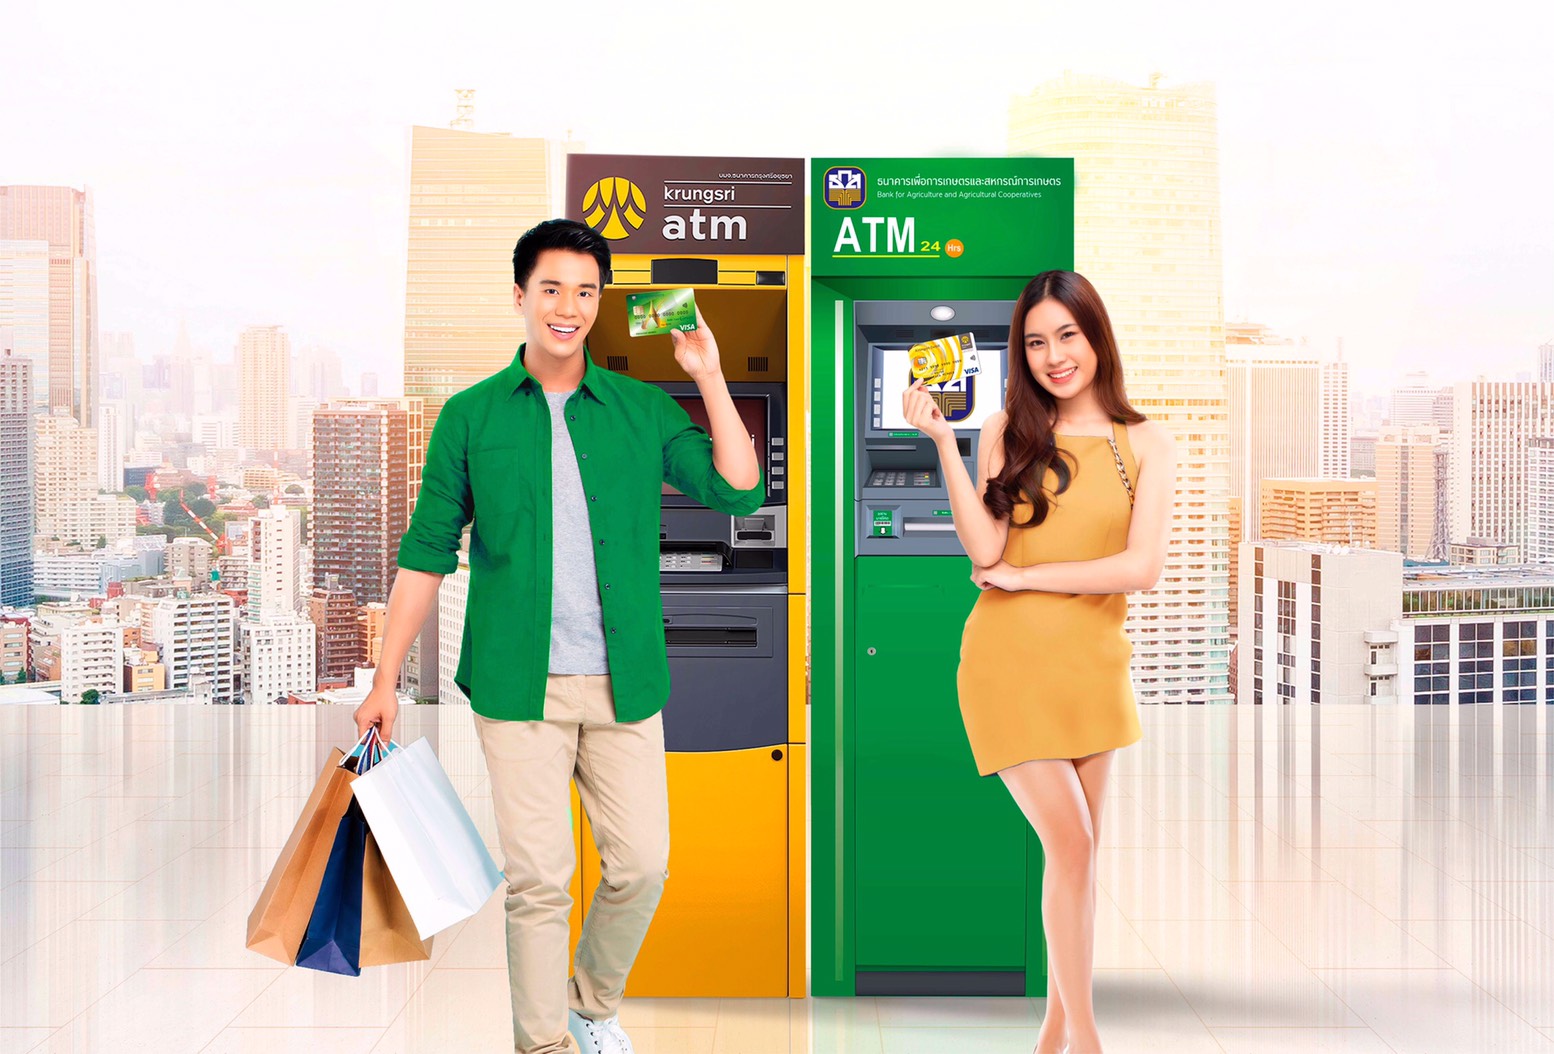 กรุงศรี-ธ.ก.ส. เปิดบริการ ATM ข้ามธนาคาร ไม่เสียค่าธรรมเนียม